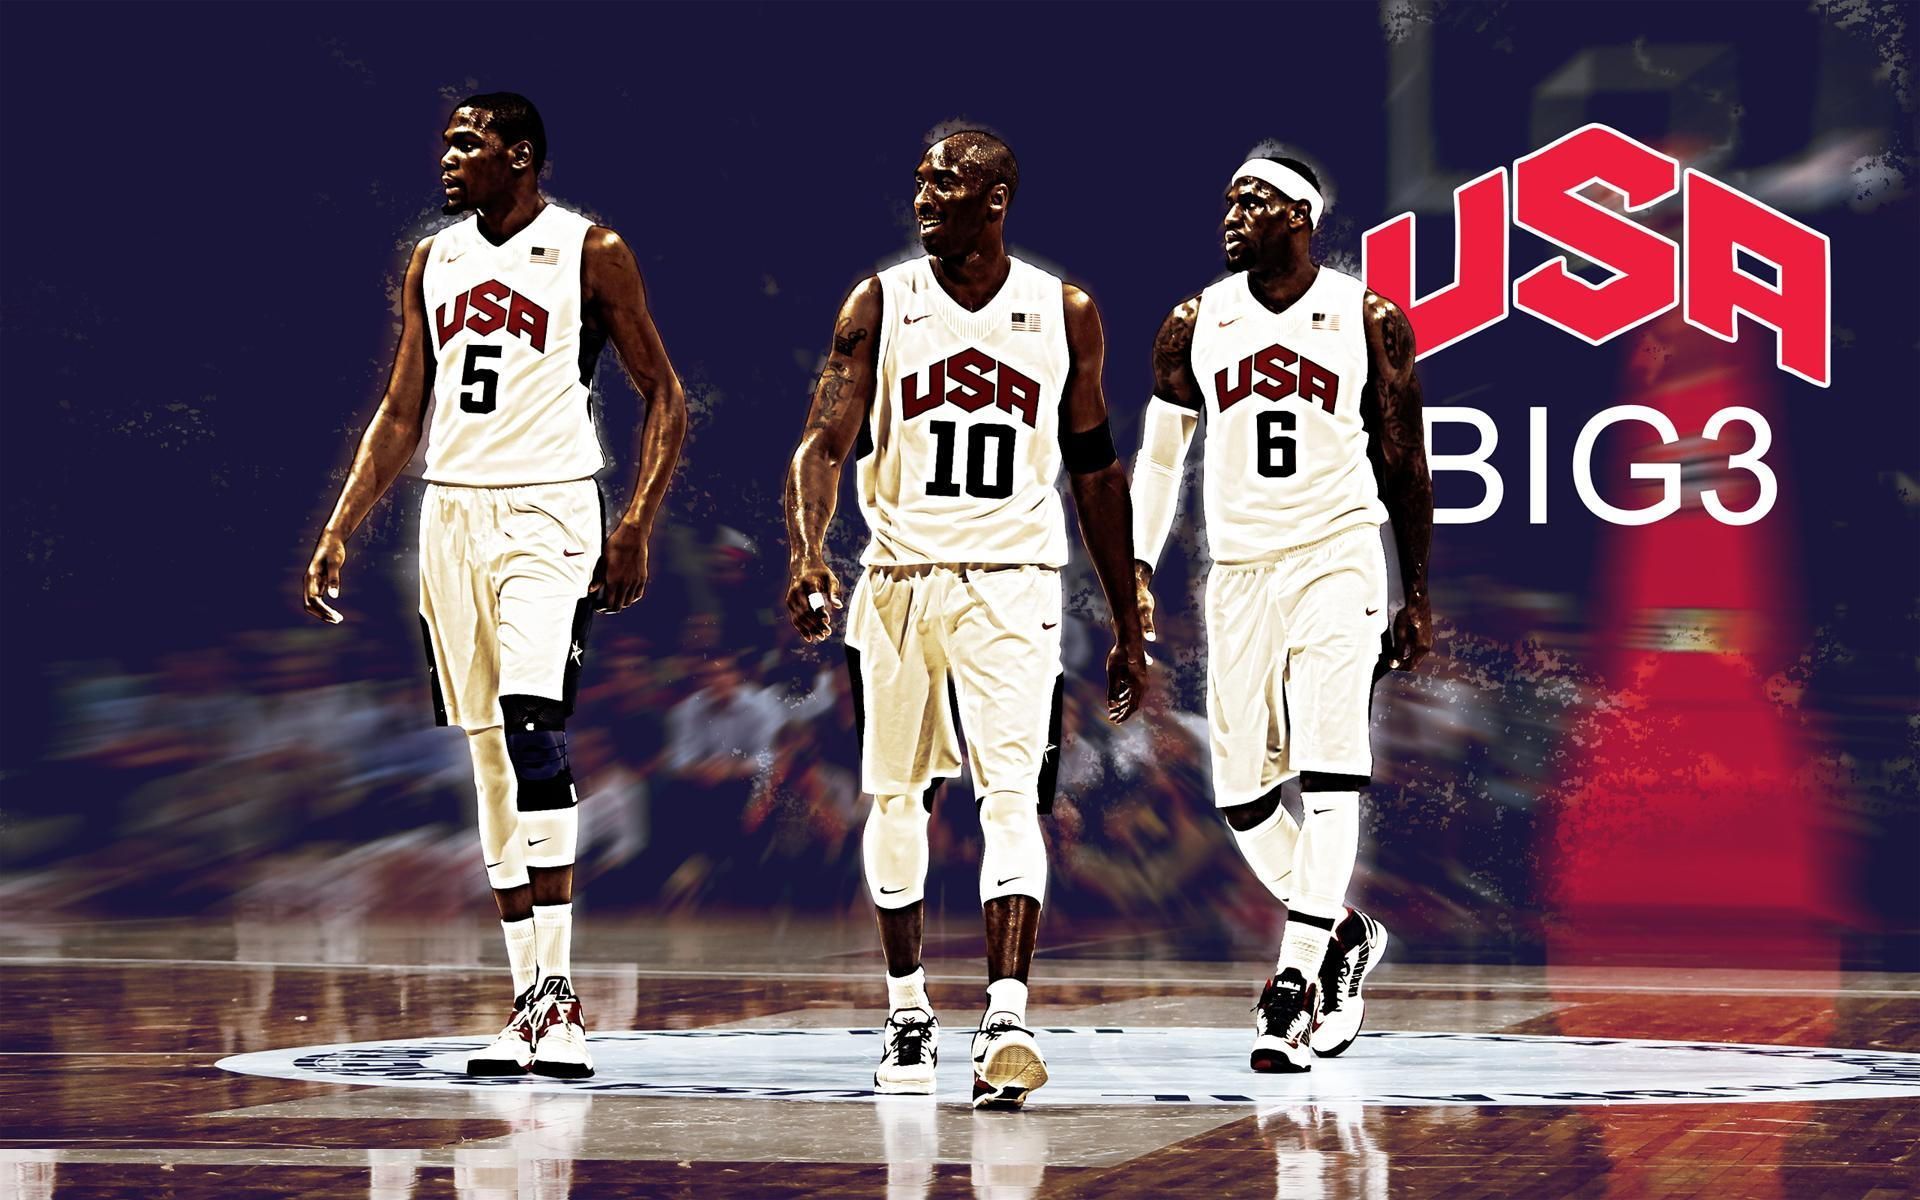 USA Basketball Wallpaper Free USA Basketball Background